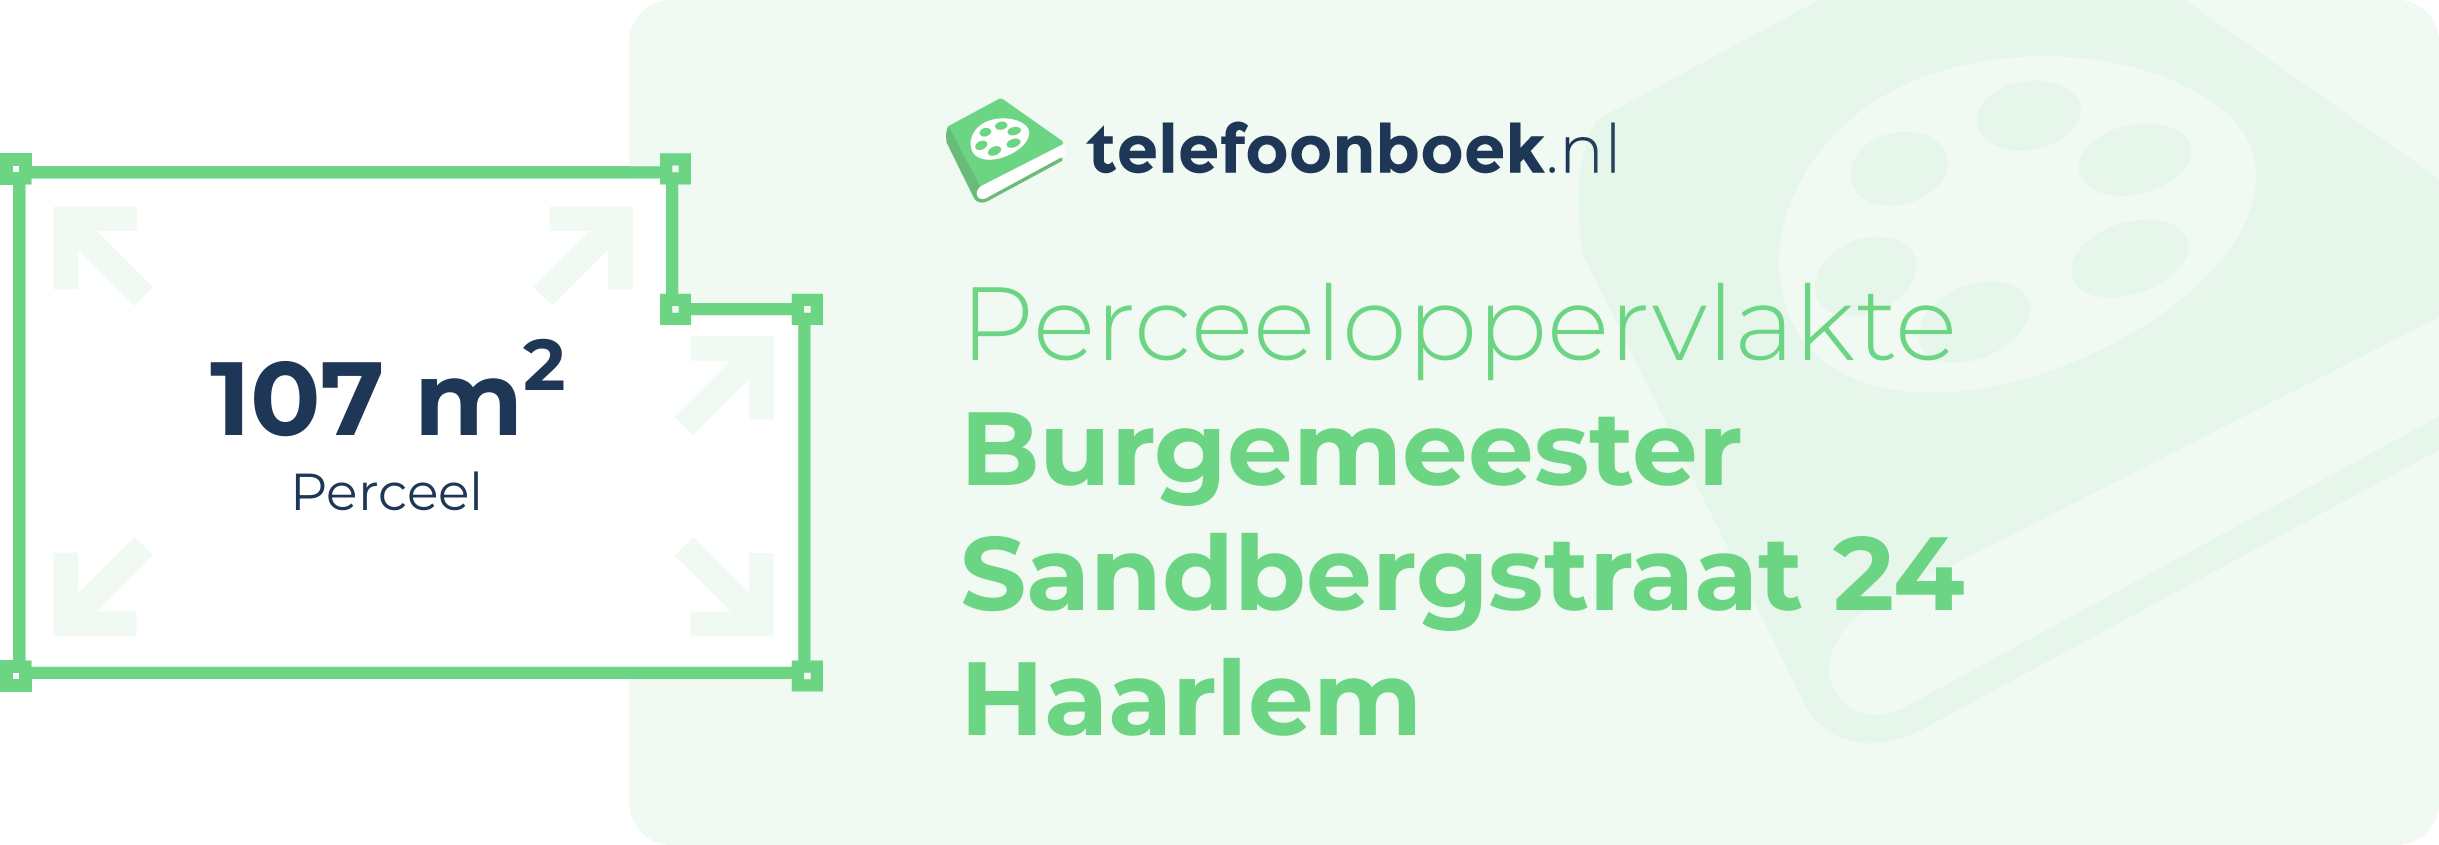 Perceeloppervlakte Burgemeester Sandbergstraat 24 Haarlem